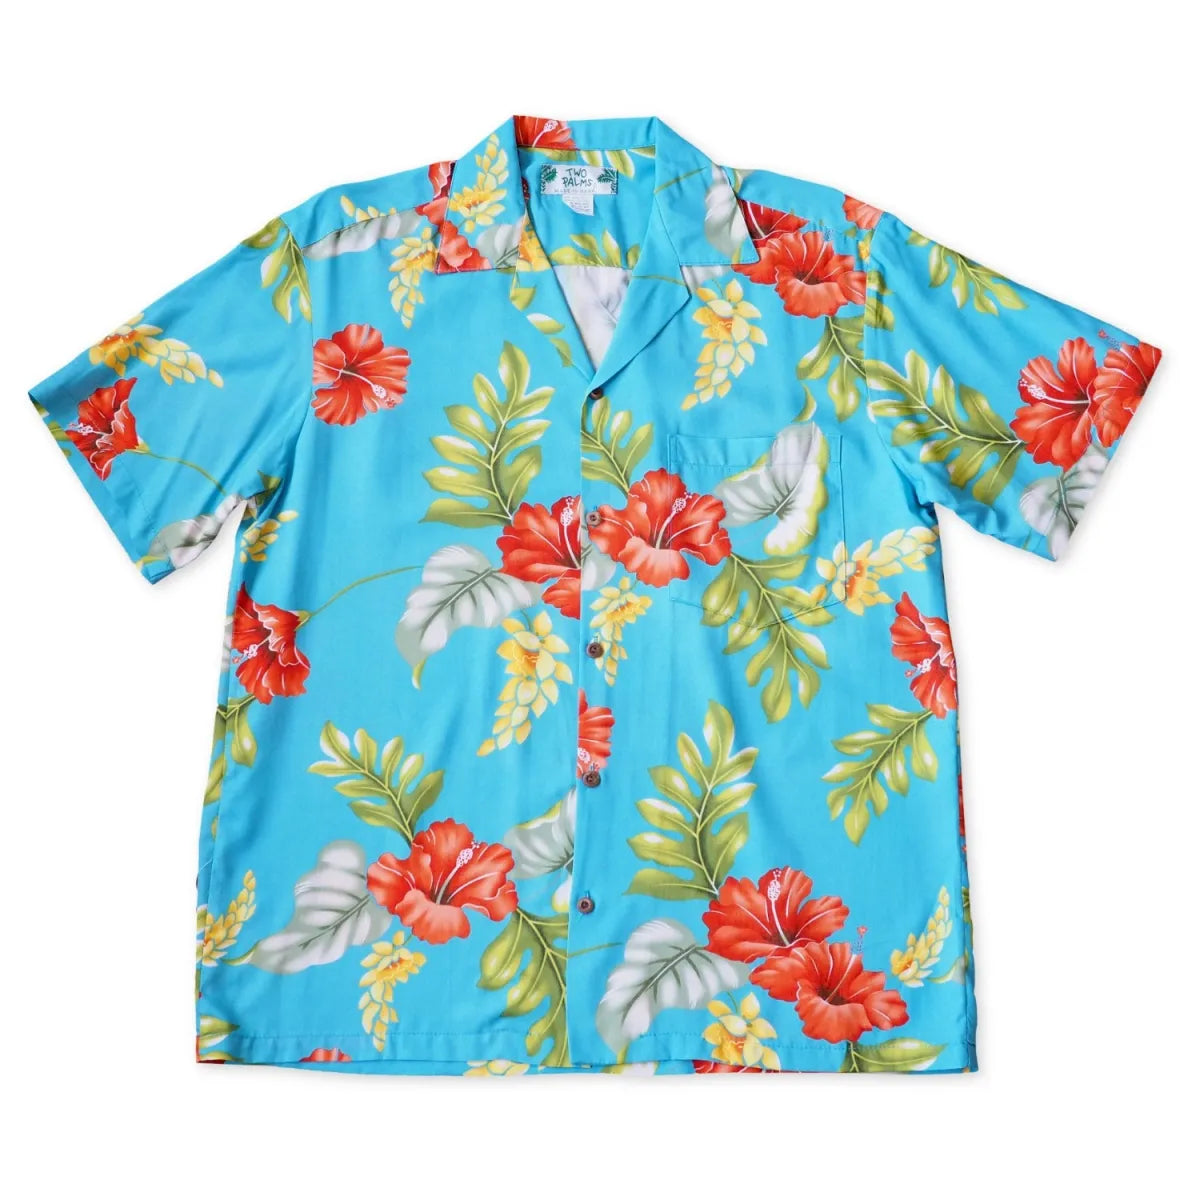 Honeymoon aqua hawaiian rayon shirt